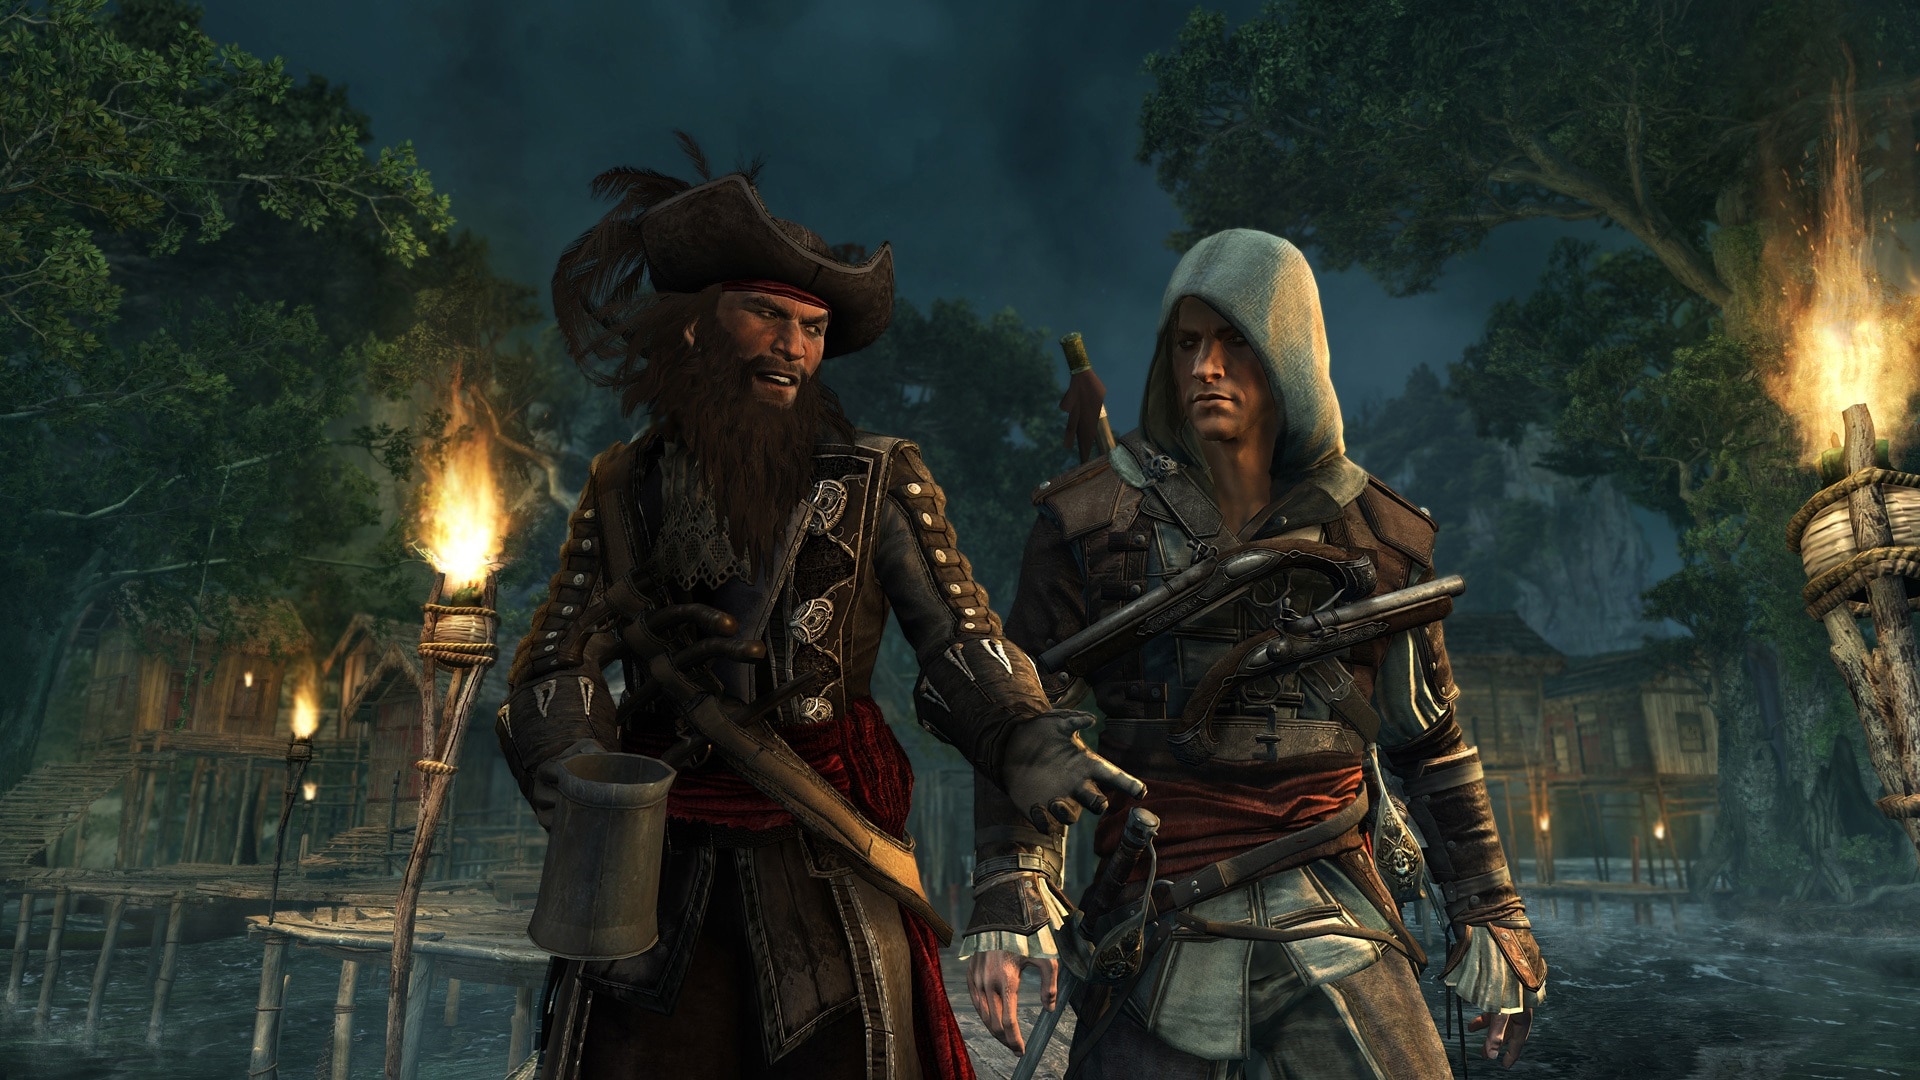  Assassin's Creed IV Black Flag - PlayStation 4 : Ubisoft: Video  Games